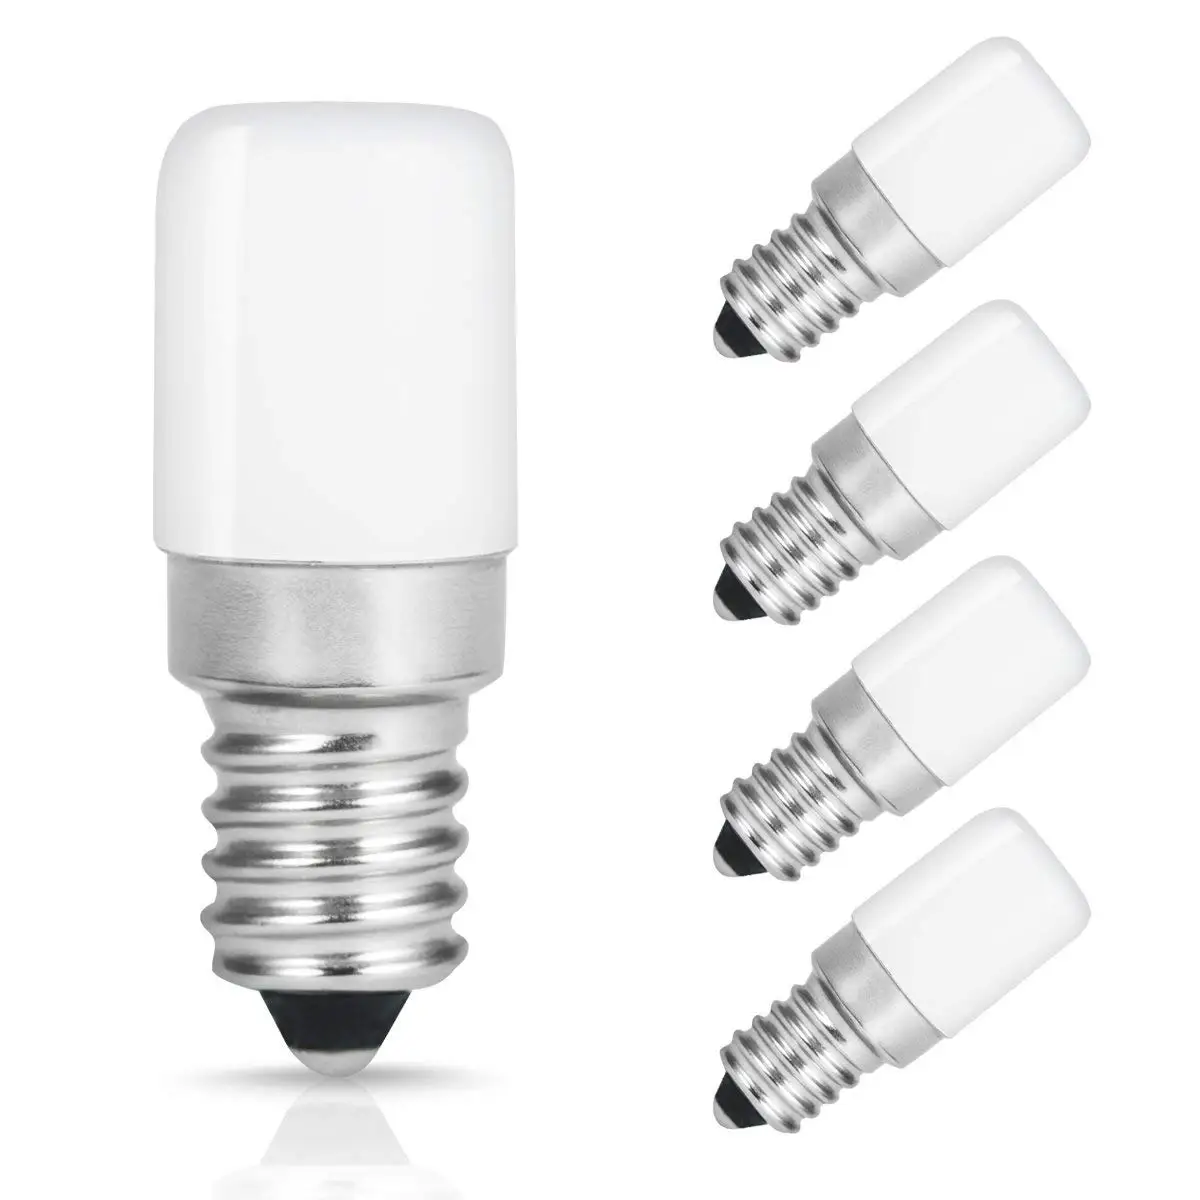 E14 Светодиодный вытяжка лампочки 1,5 Вт ses холодильник светодиодный светильник лампы 2700 к/6000 К Белый Замена для 15 Вт галогенная лампа, 135lm